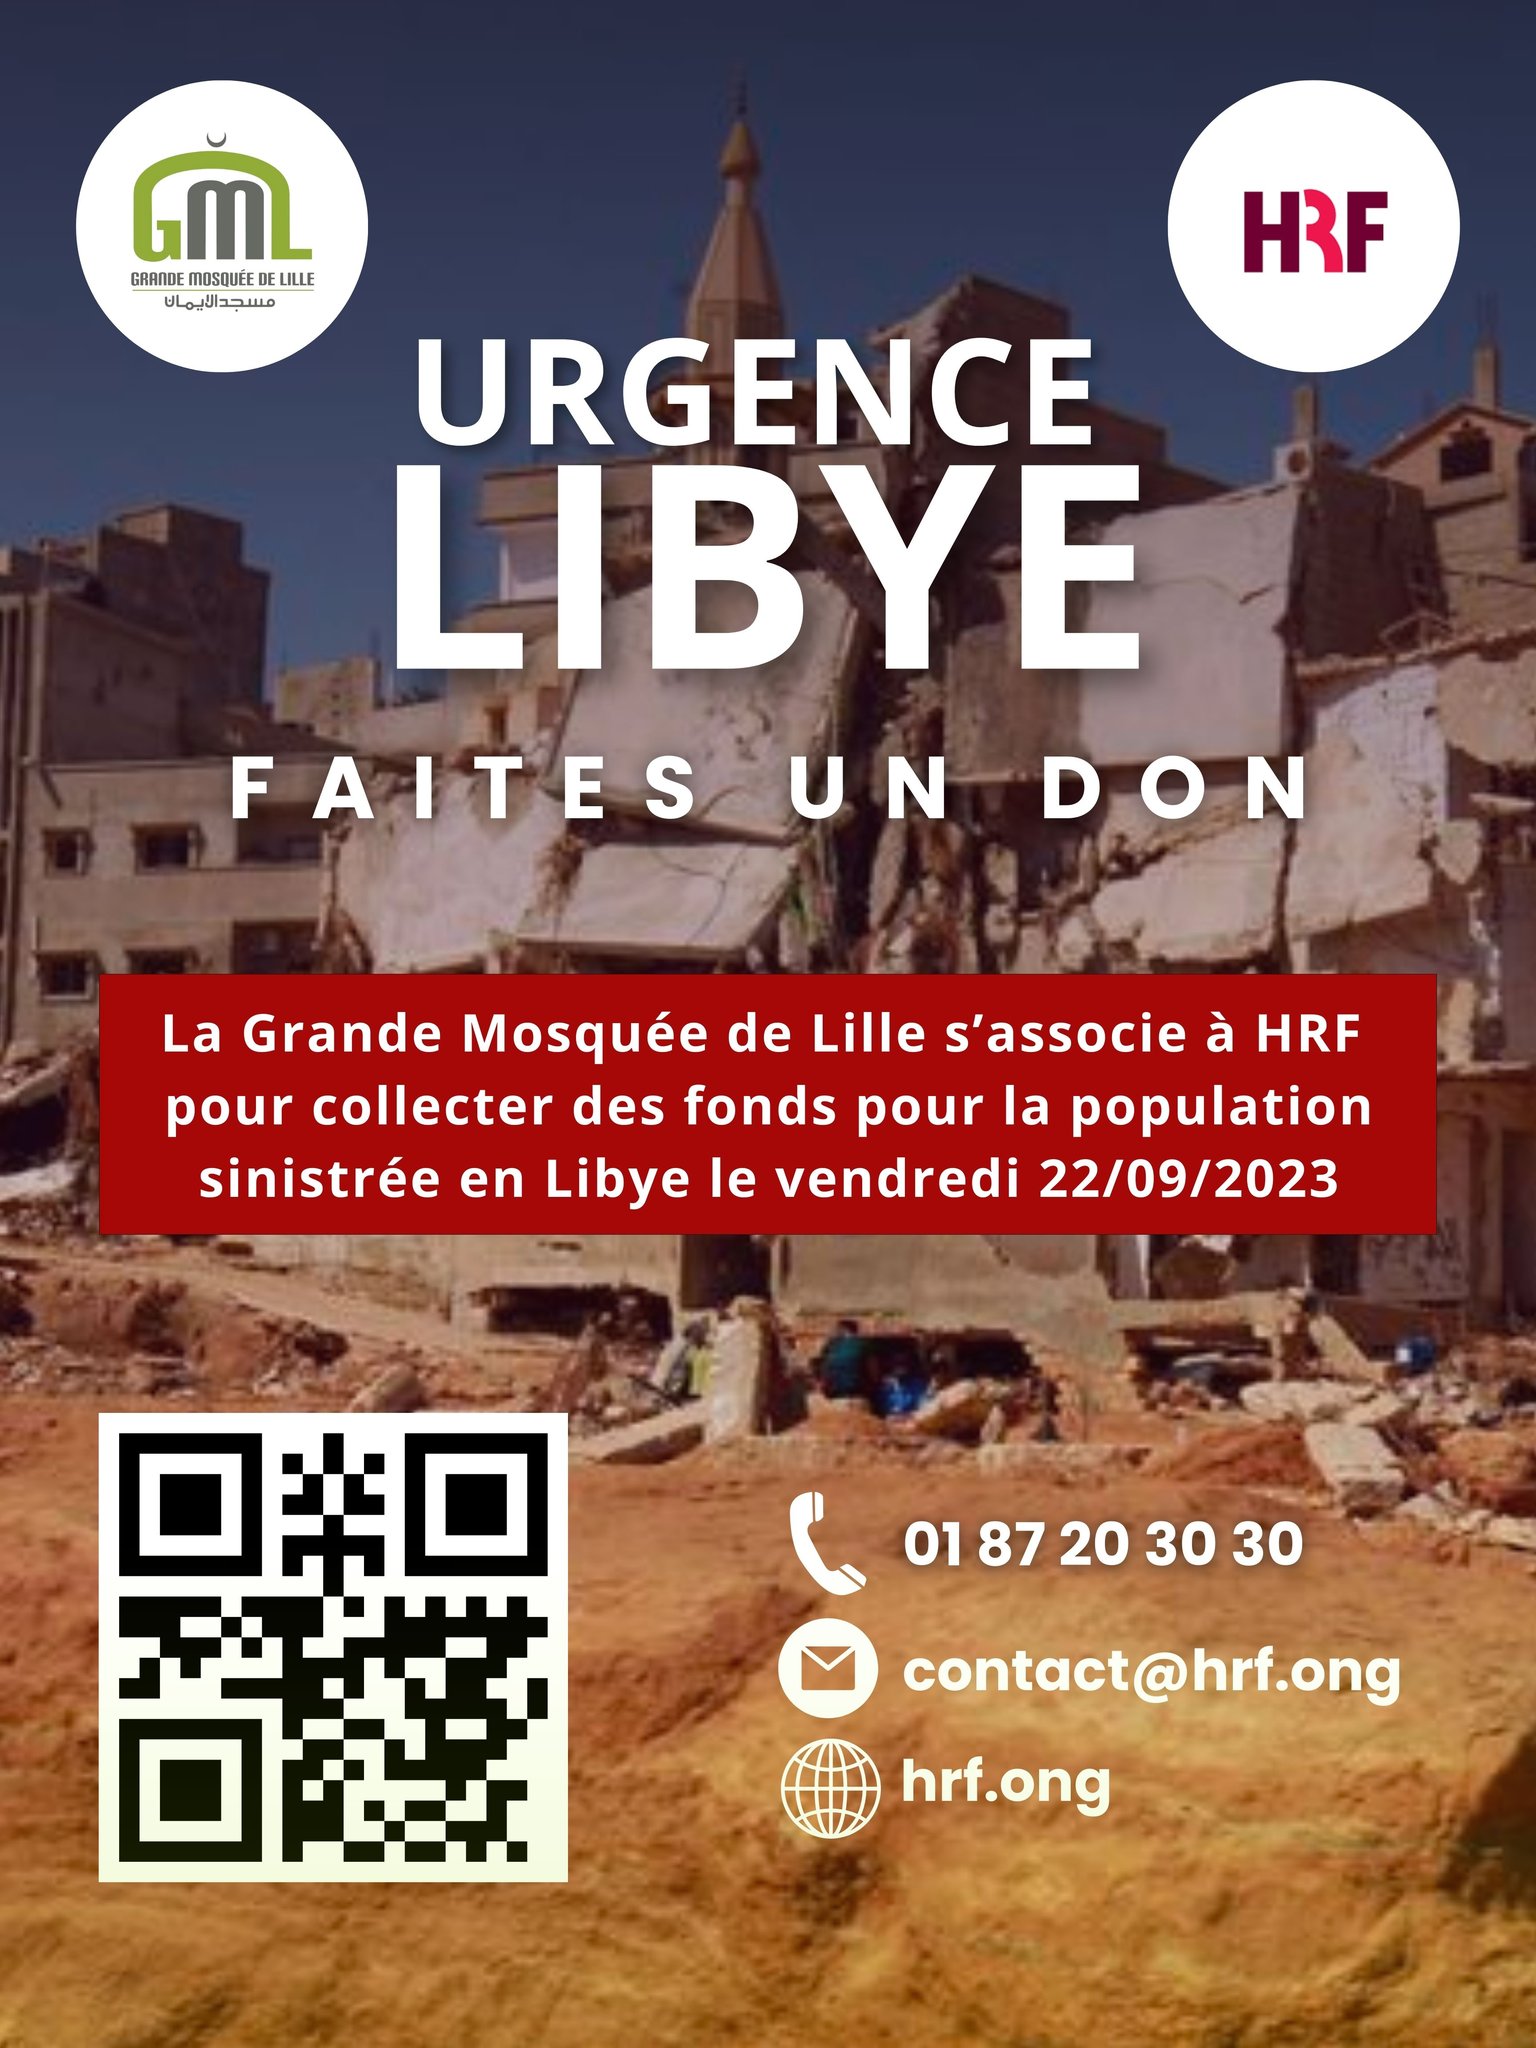 La tempête Daniel en Lybie : Appel aux Dons